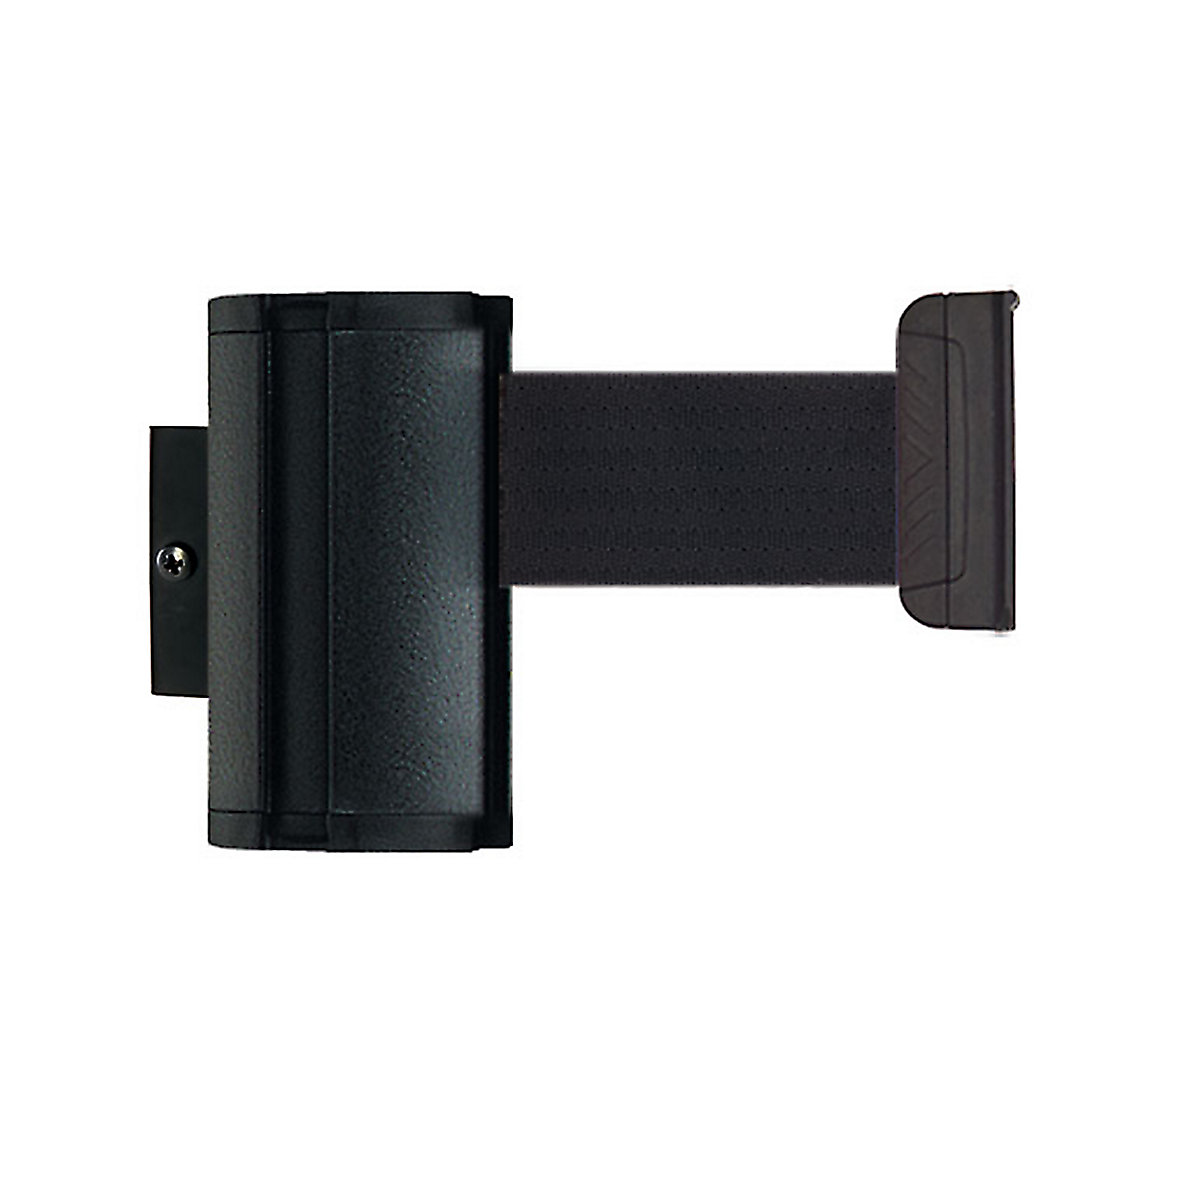 Cassetta per nastro Wall Mount, estrazione nastro max 2300 mm, nastro nero-3